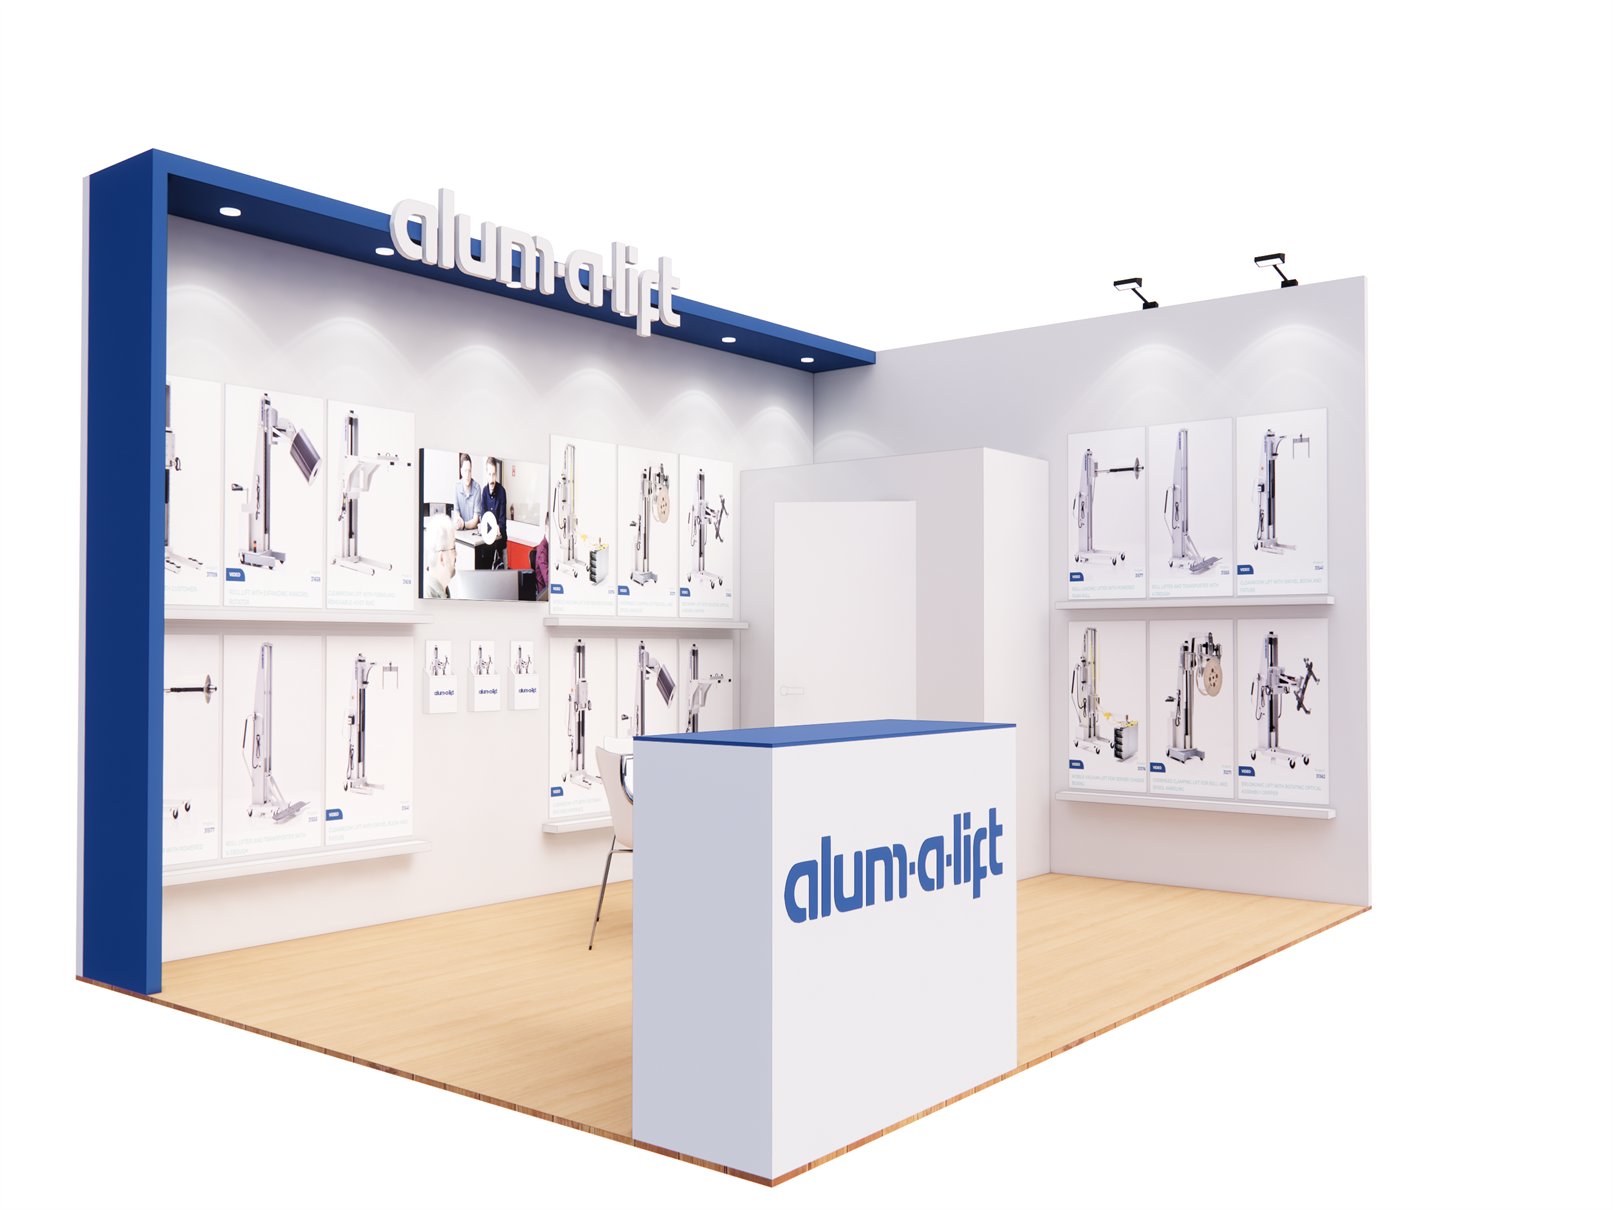 Alum.A.Lift 20′ x 30′ Custom Trade Show Booth Design